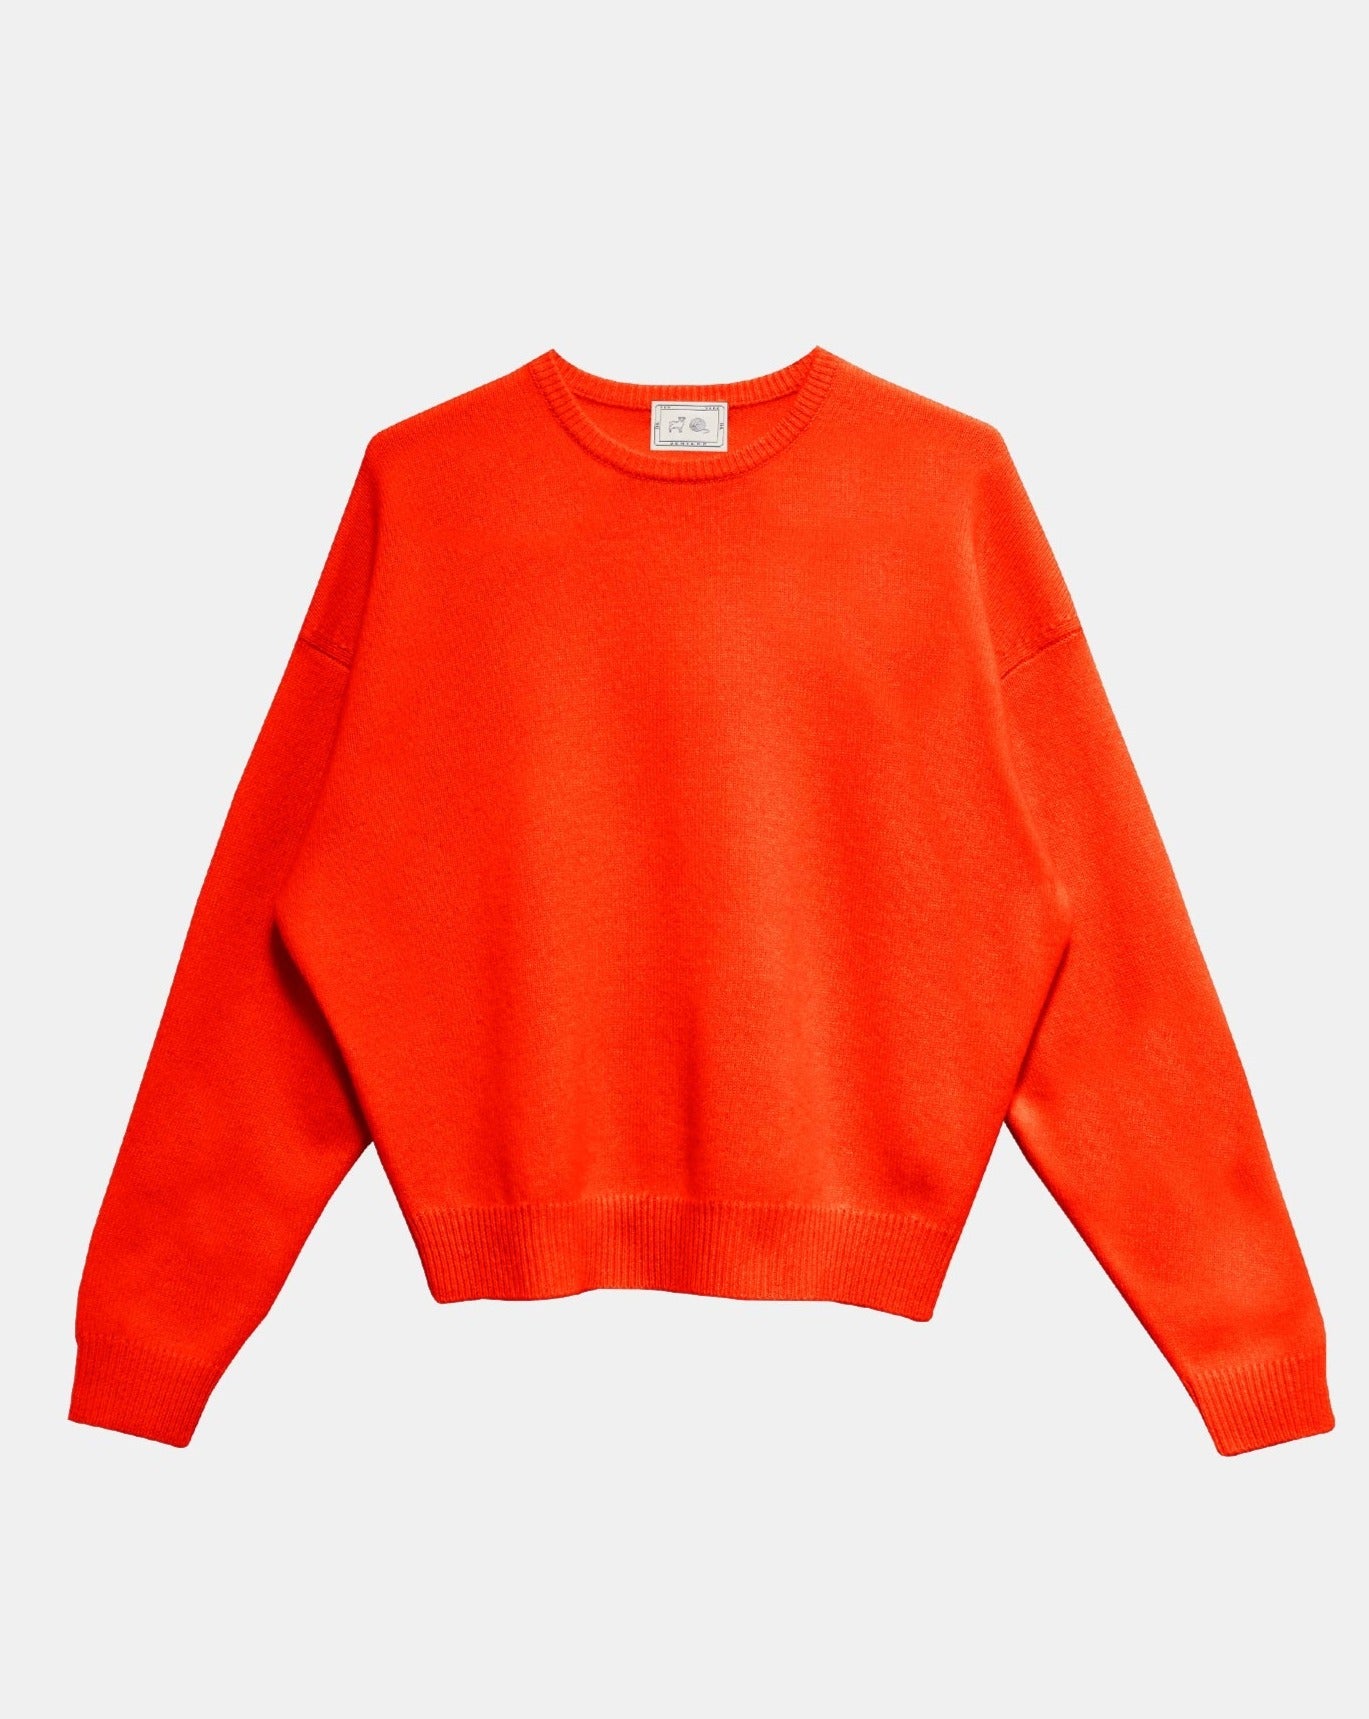 Demylee Artemis Sweater Red Orange-Demylee-Thistle Hill